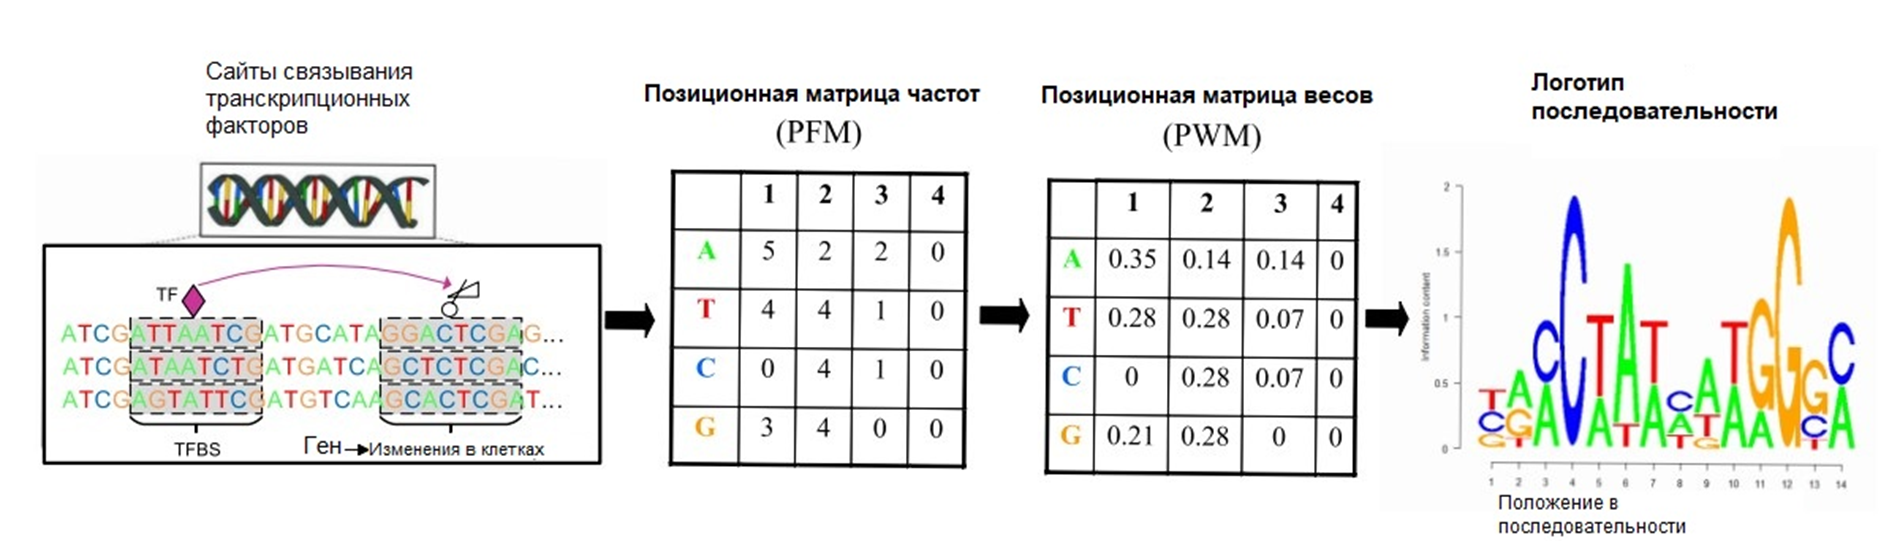 Построение позиционной весовой матрицы и логотипа последовательности